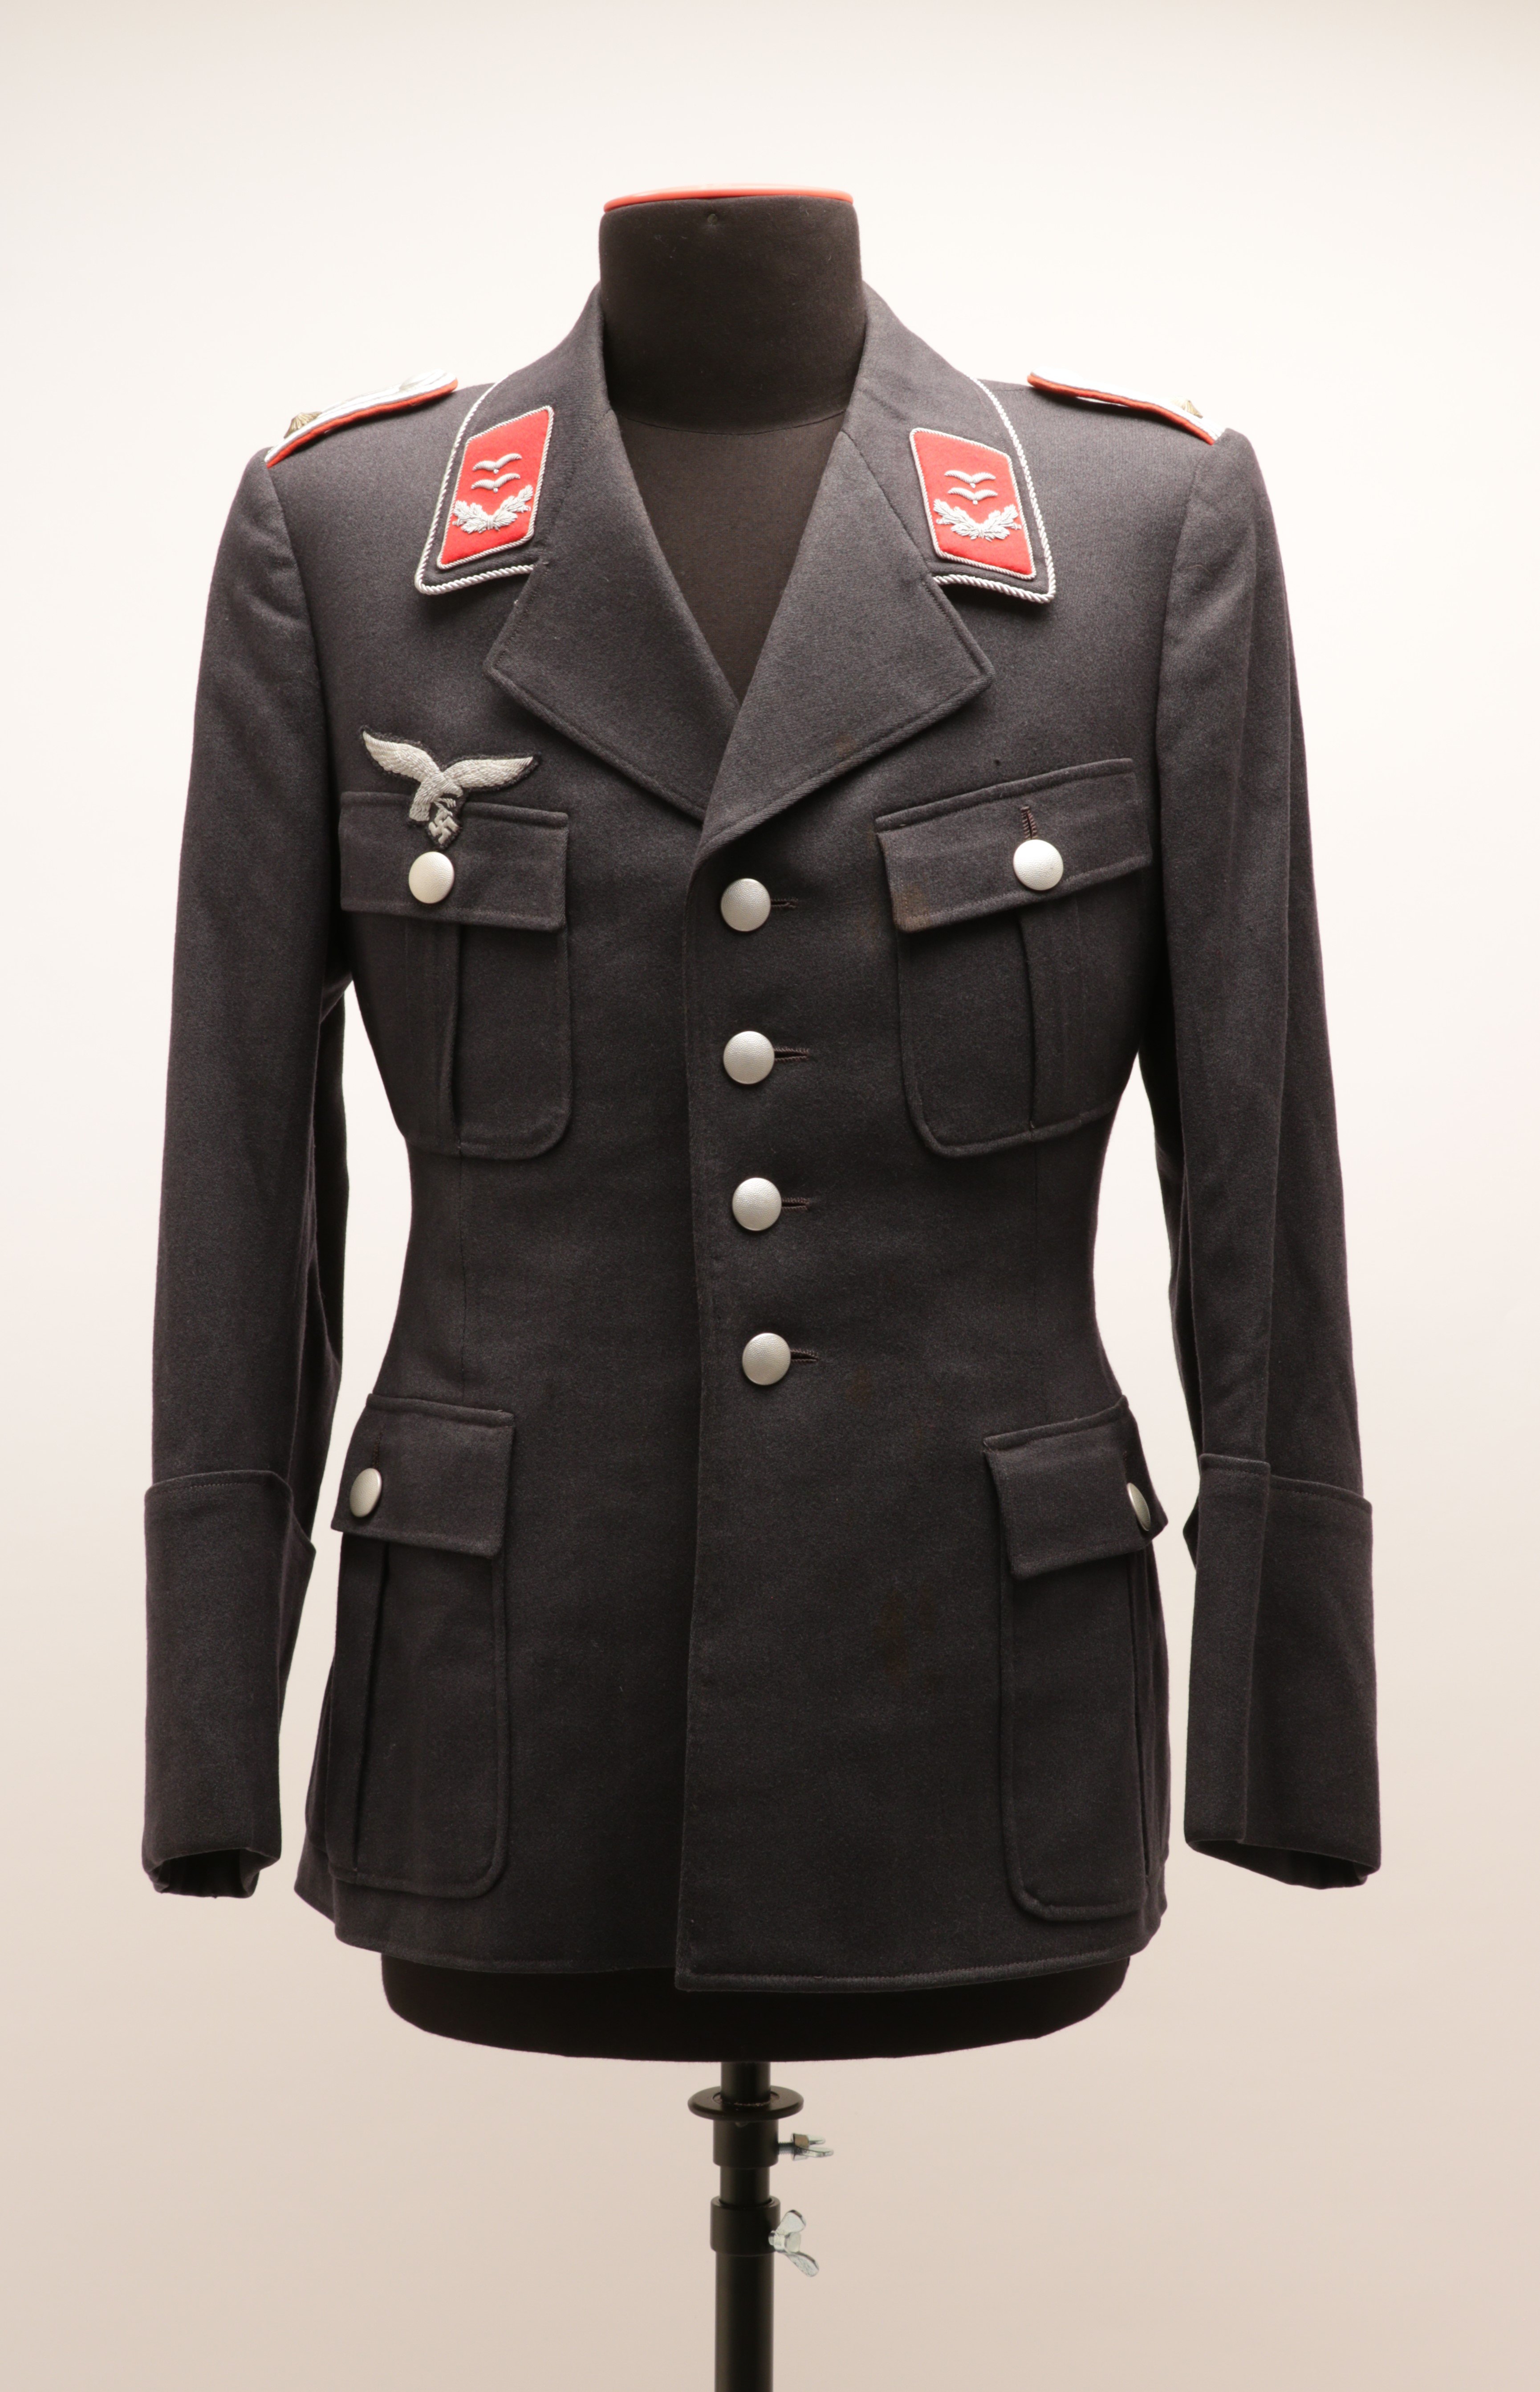 Uniformjacke (Oberleutnant der Luftwaffe), Deutsches Reich, vor 1945 (Museum Berlin-Karlshorst CC BY-NC-SA)